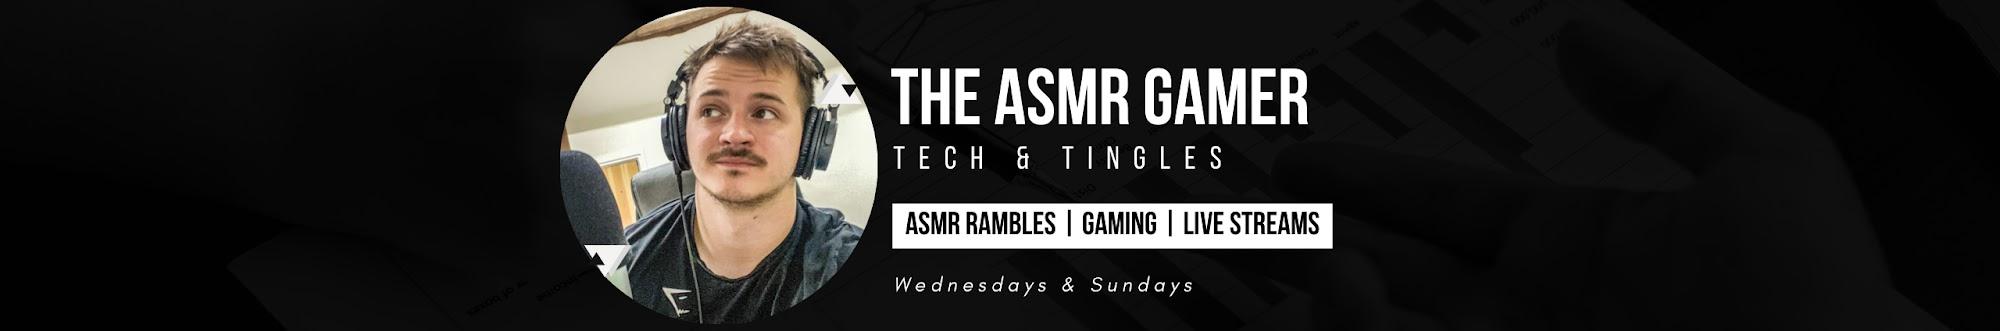 The ASMR Gamer